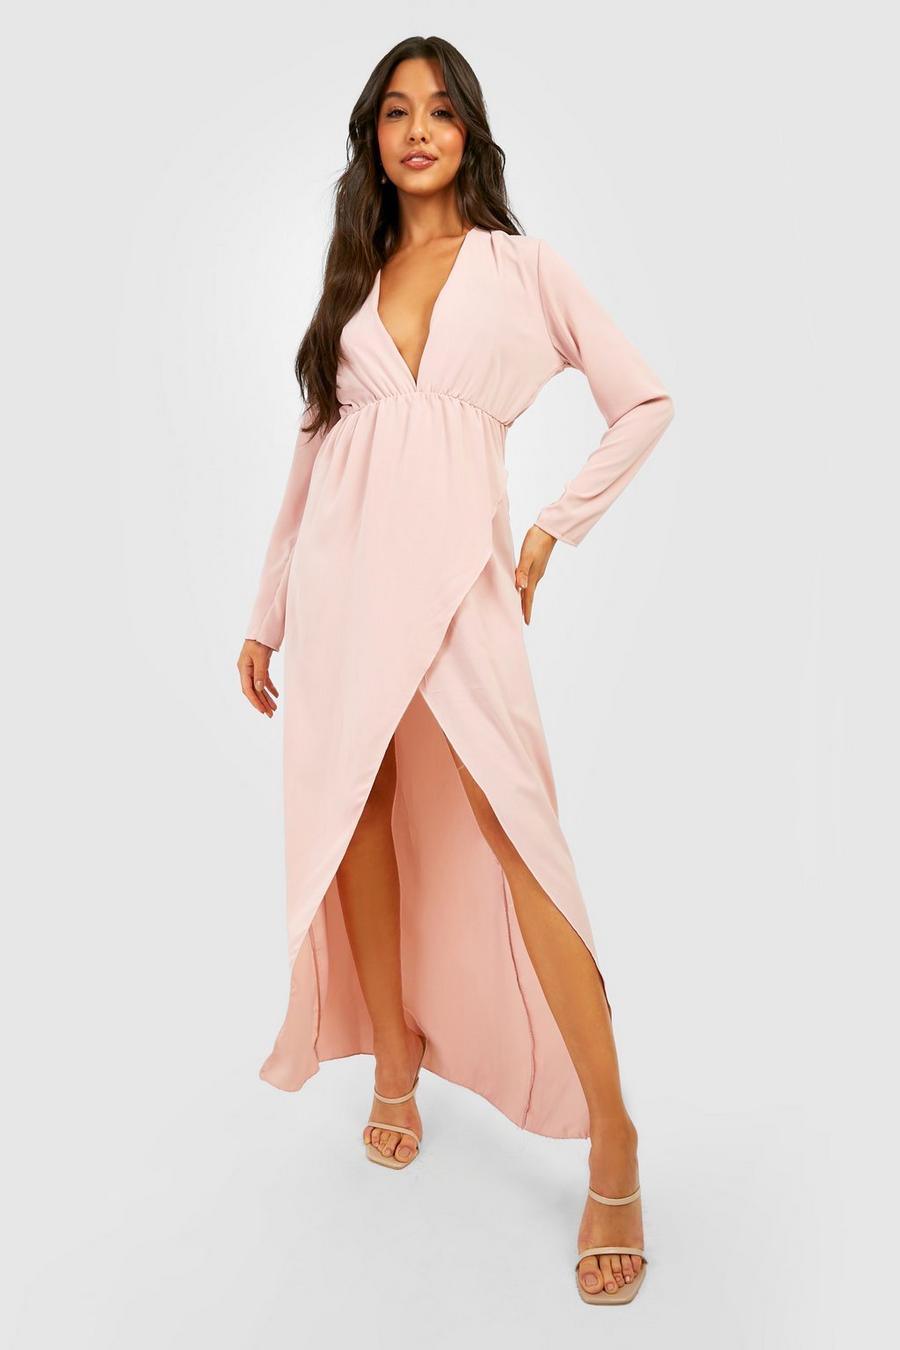 Blush pink Chiffon Long Sleeve Wrap Dress 